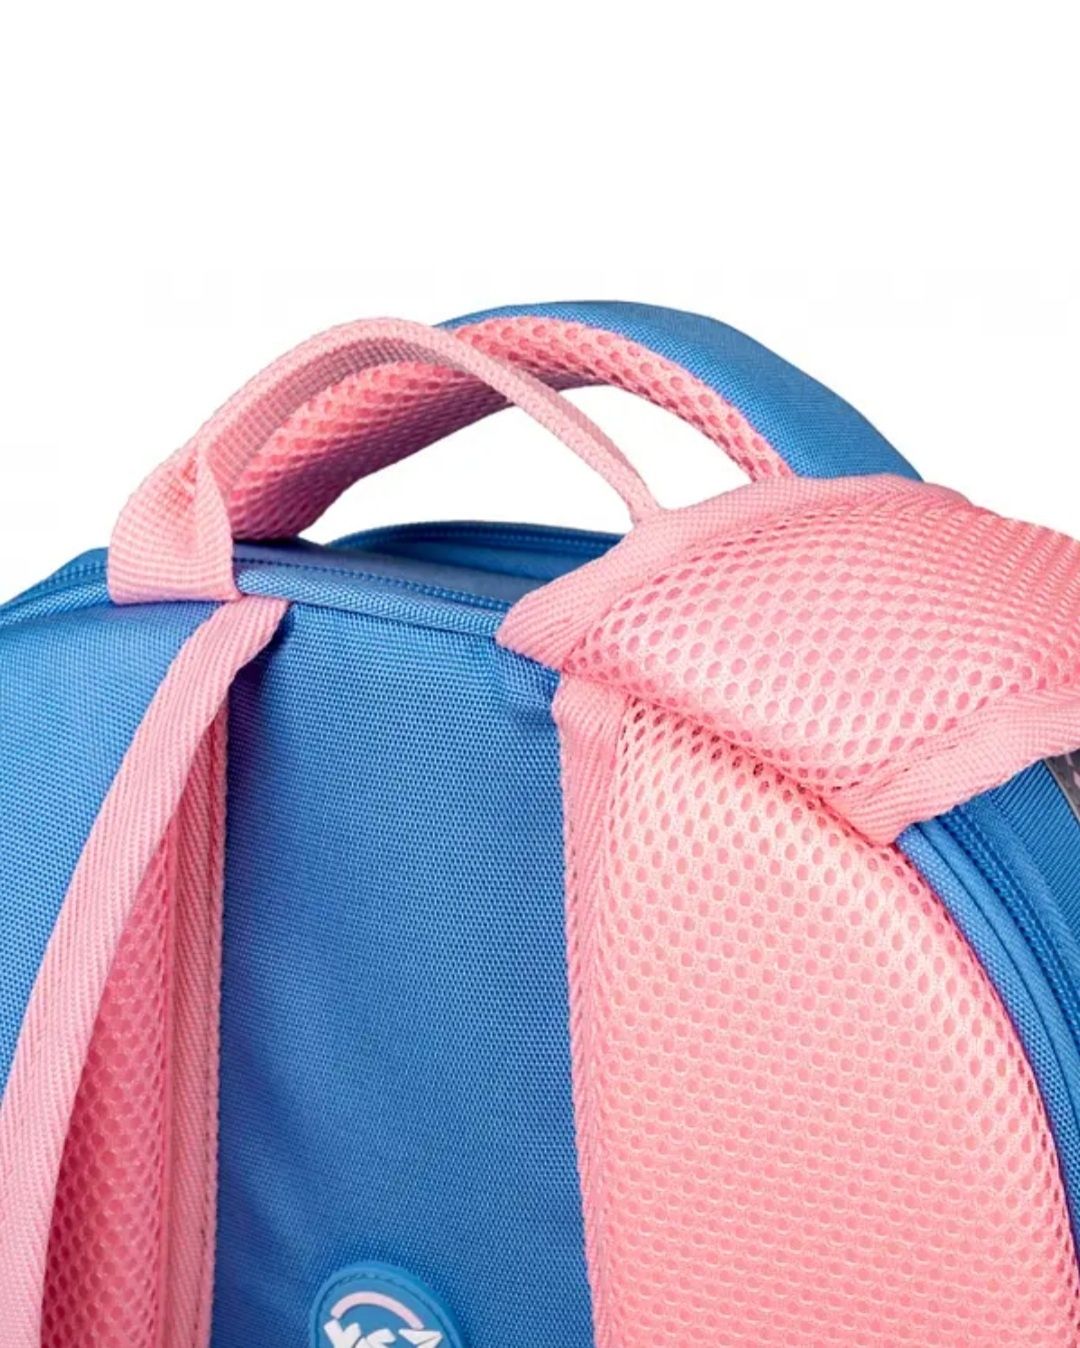 Шкільний рюкзак YES, рюкзак для школи якісний рюкзак (559548)